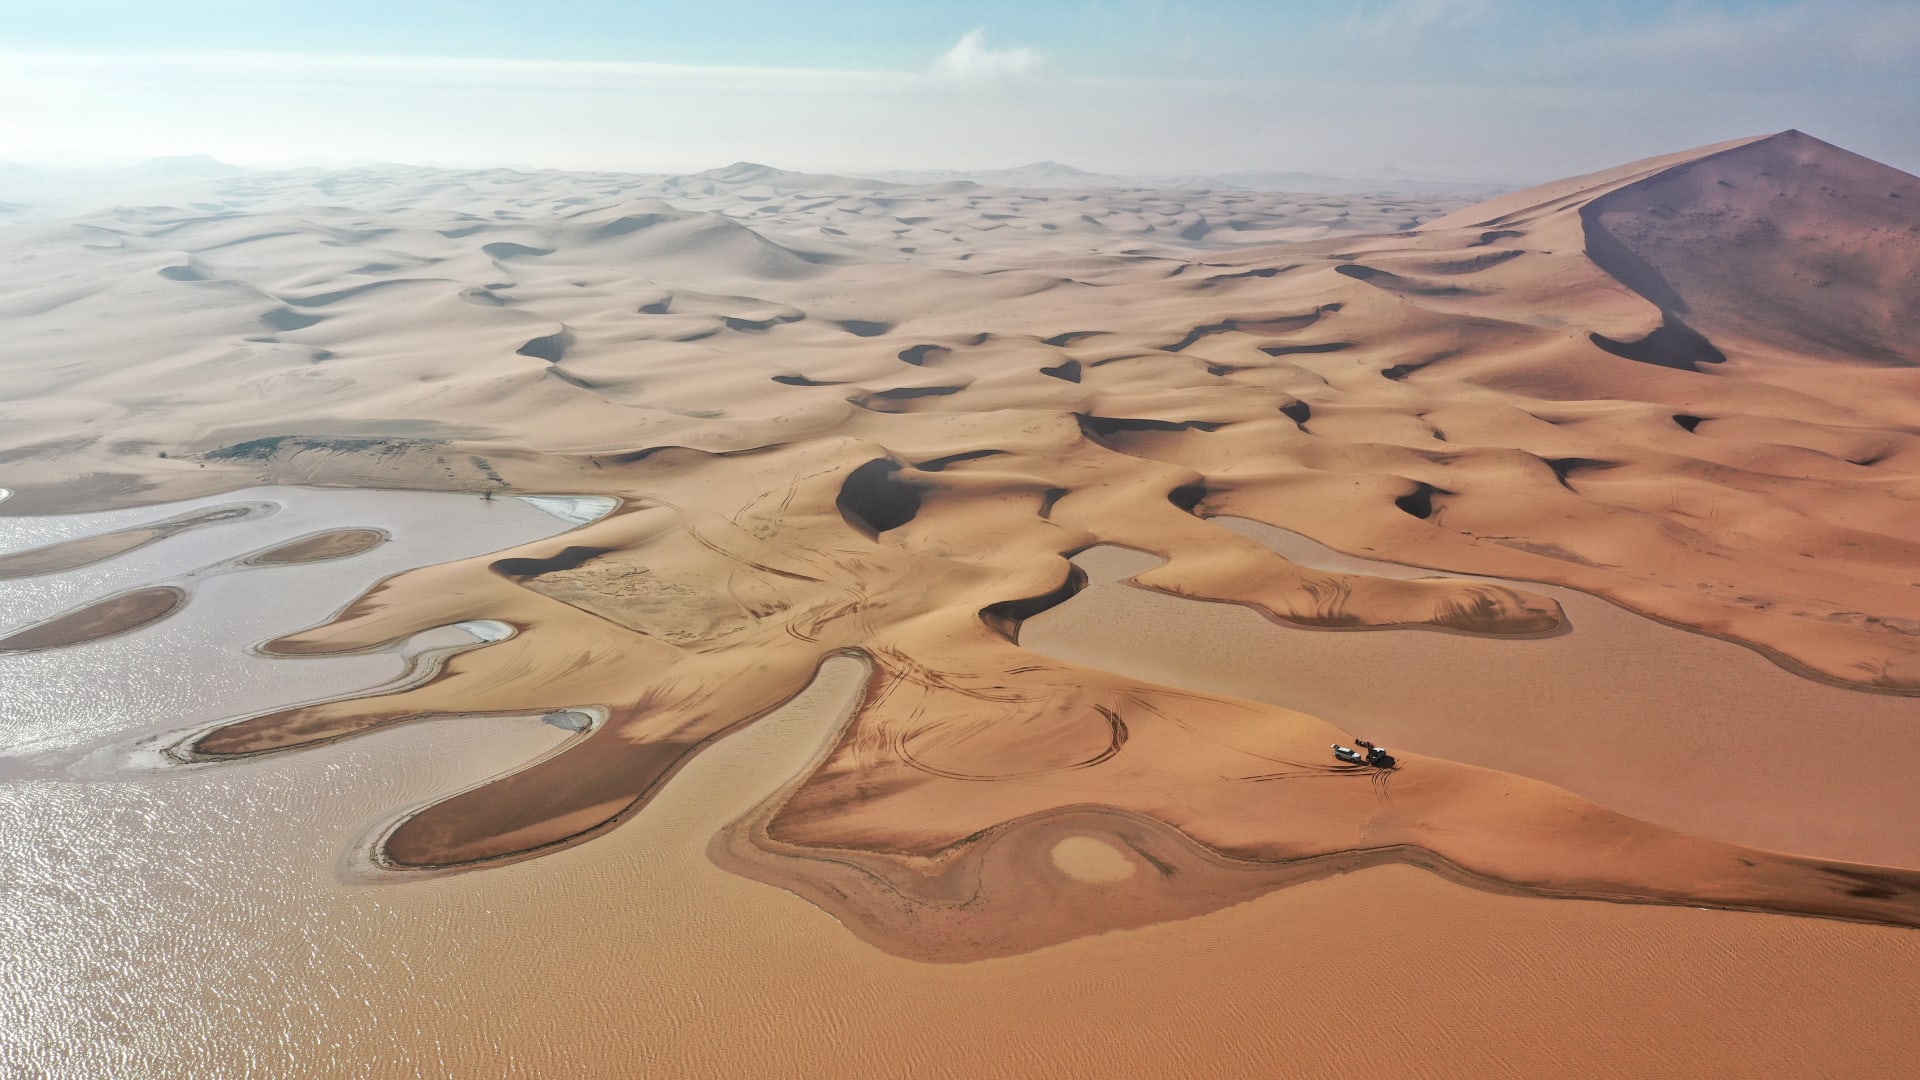 بعد الأمطار الغزيرة بالسعودية.. مصور يوثق مشهدًا ساحرًا لبحيرات في قلب الصحراء